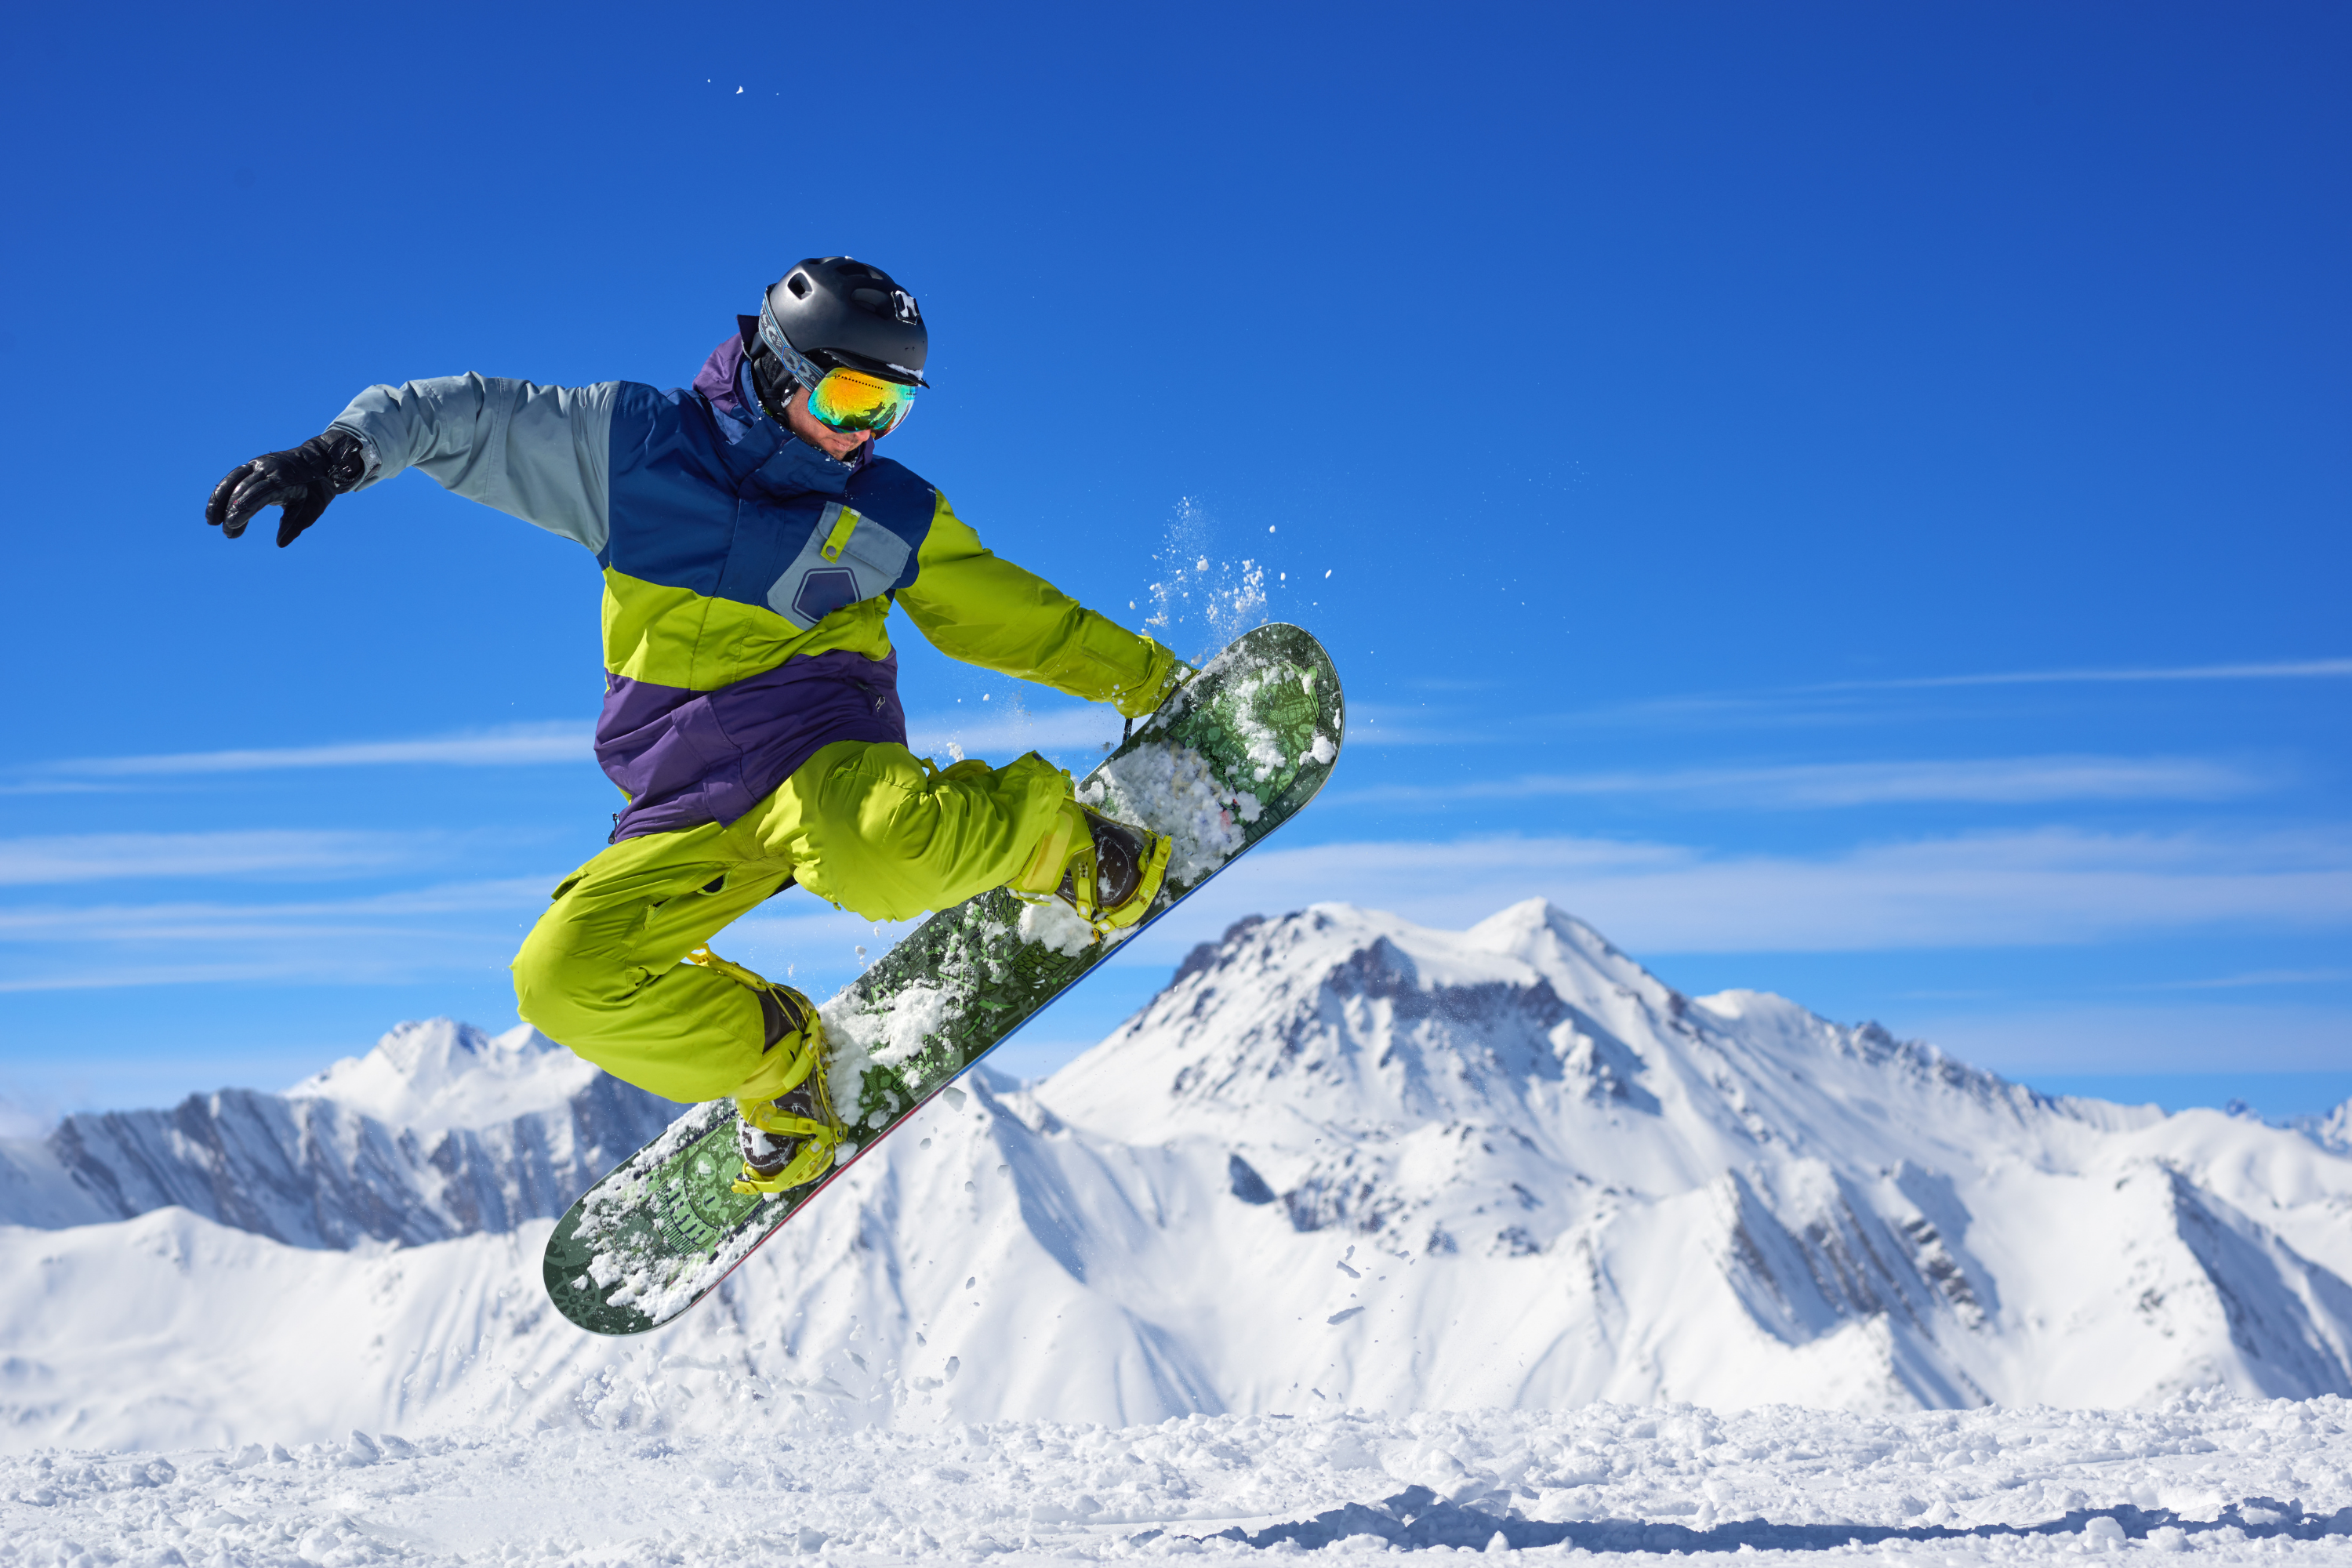 echipamentul-ideal-pentru-snowboarding